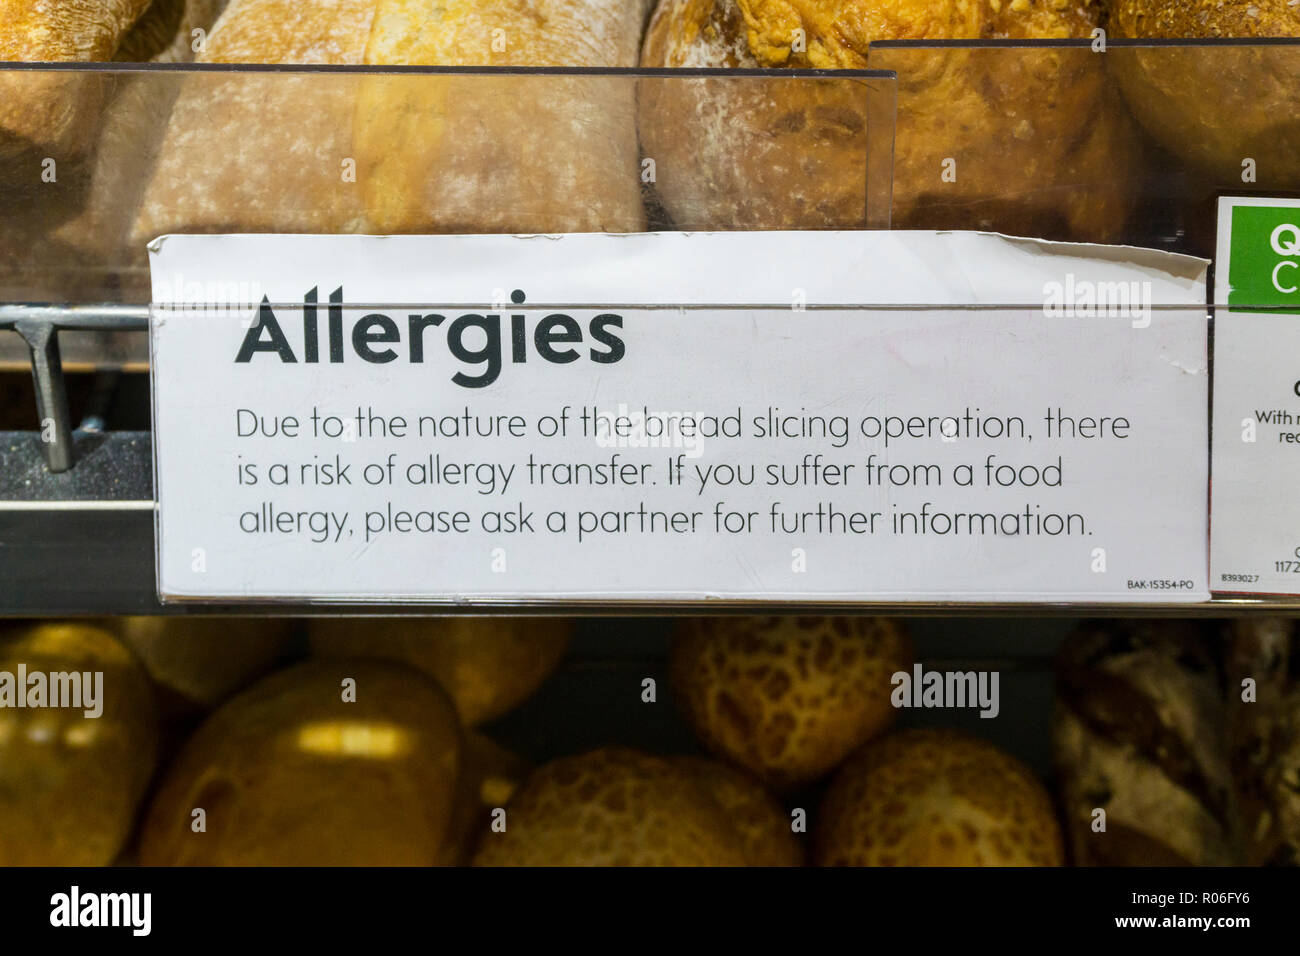 Eine Allergie Beratung Label auf einem Waitrose Brot Zähler warnt vor möglichen allergen oder Allergie übertragen. Stockfoto